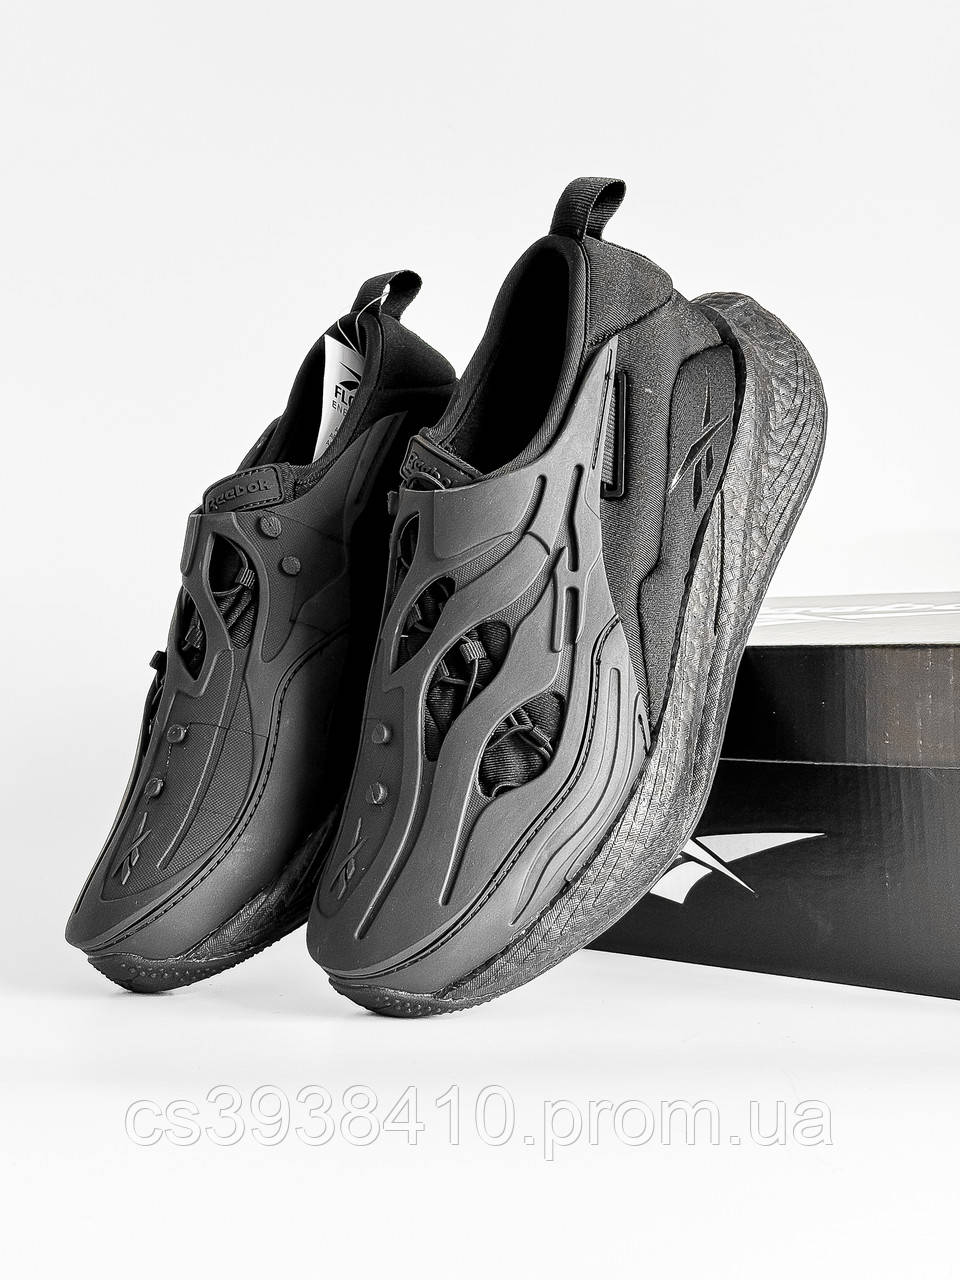 Круті кросівки Reebok Floatride Black X за Хорошою ціною Якість вогонь Чоловічі Reebok Floatride Нова модель